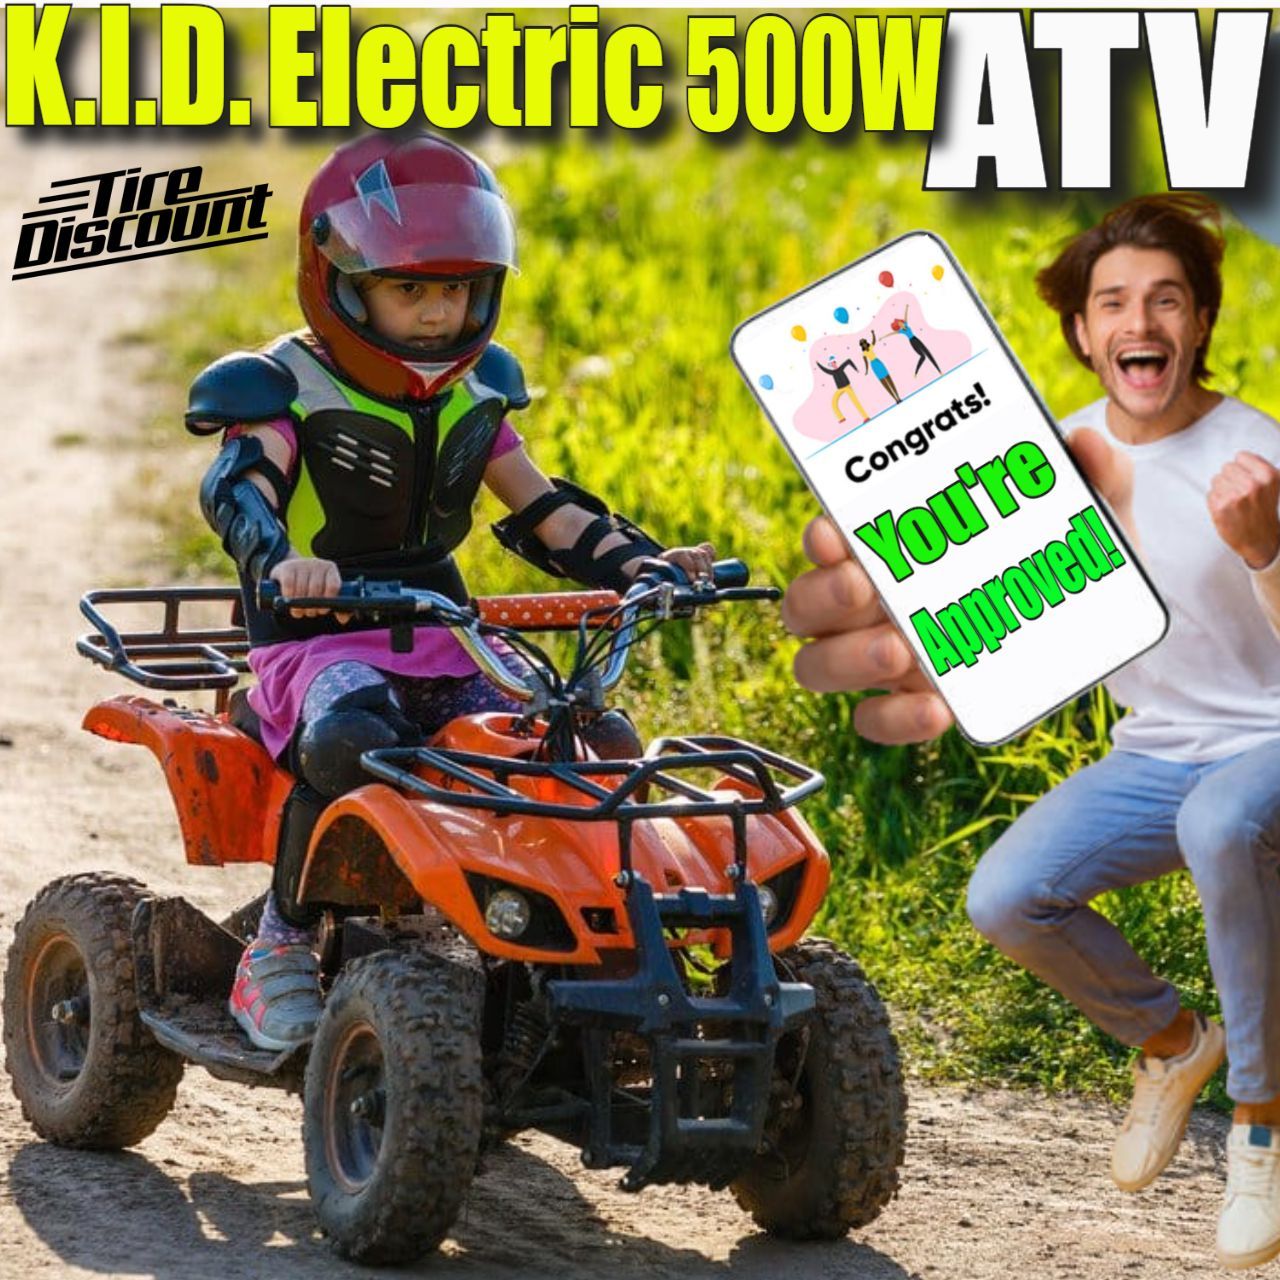 K.I.D. 36V 500W ELECTRIC ATV